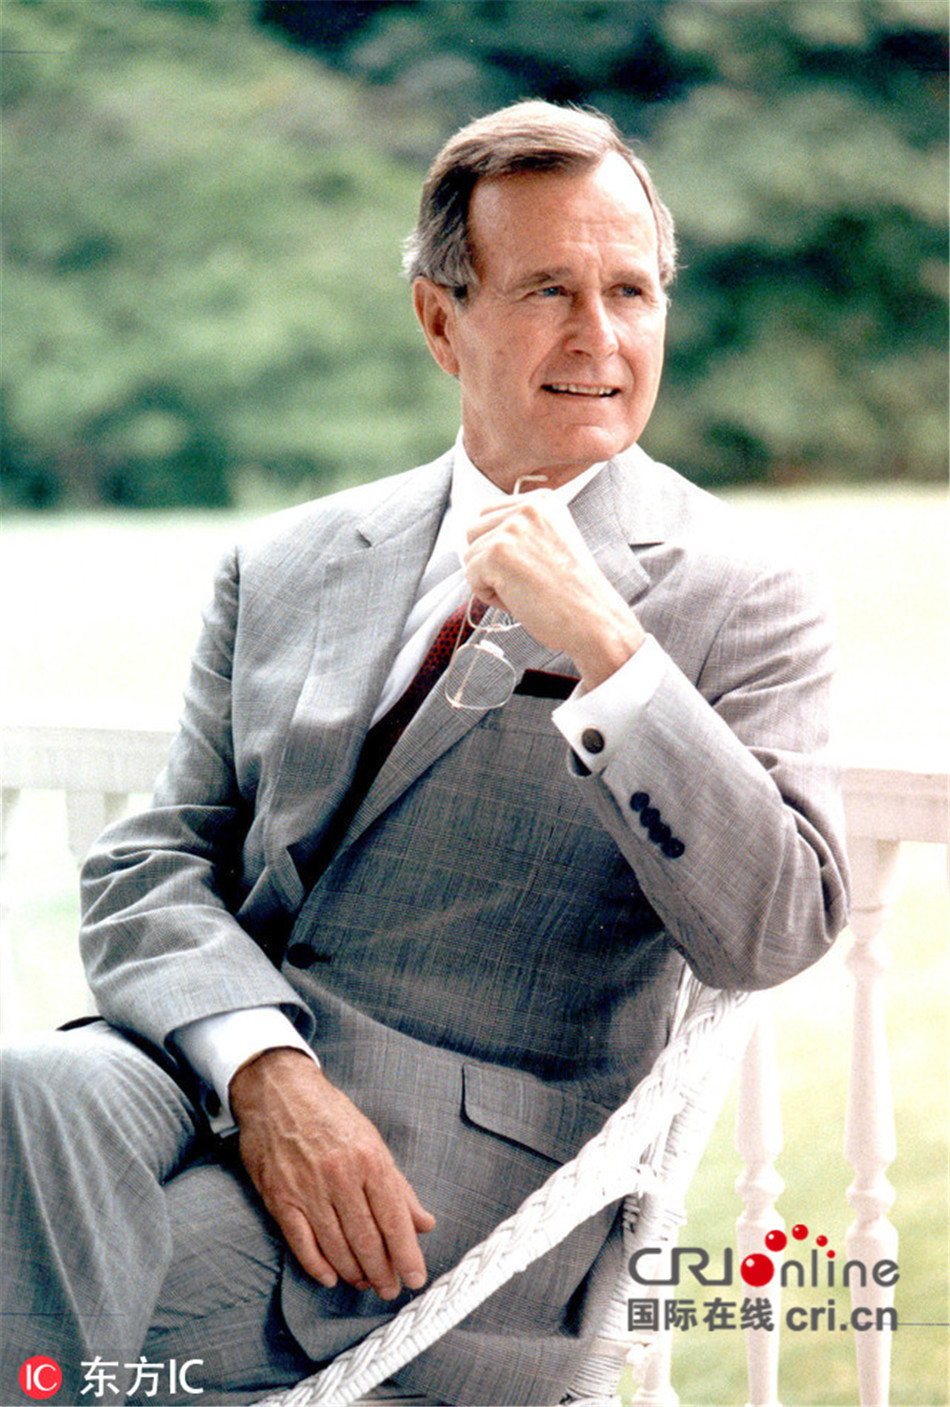 美国前总统老布什去世享年94岁